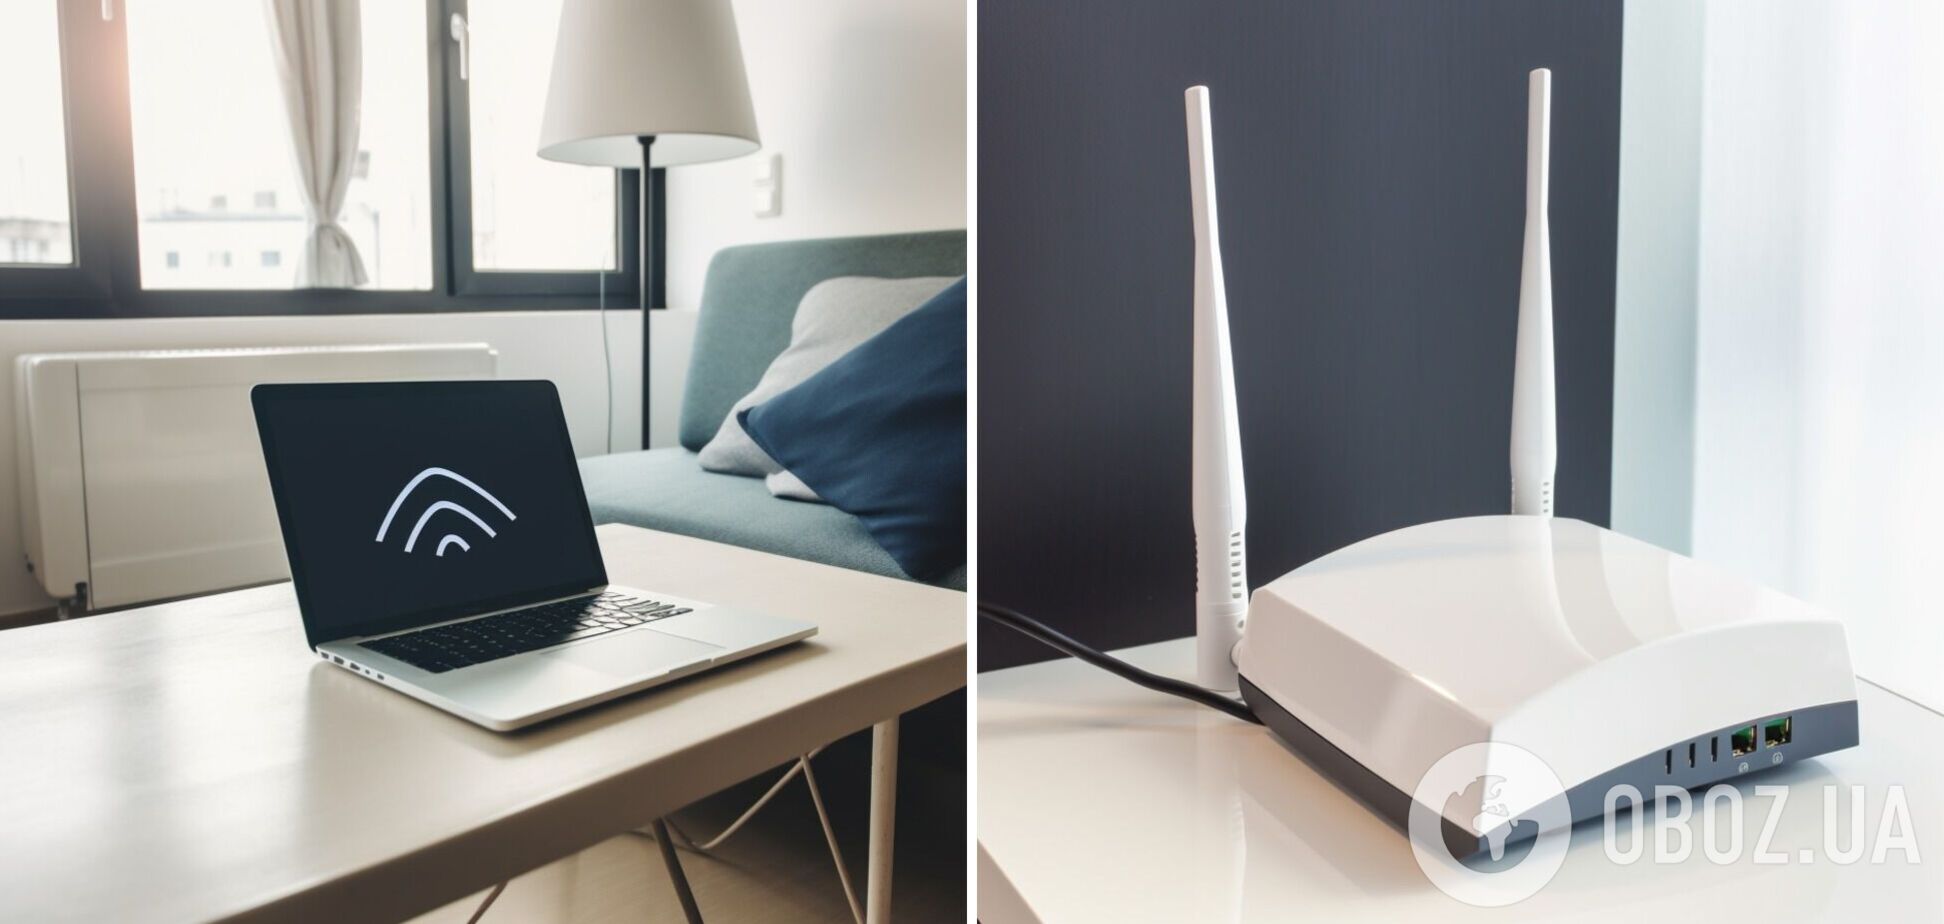 Сигнал будет лучше: где в квартире поставить роутер Wi-Fi